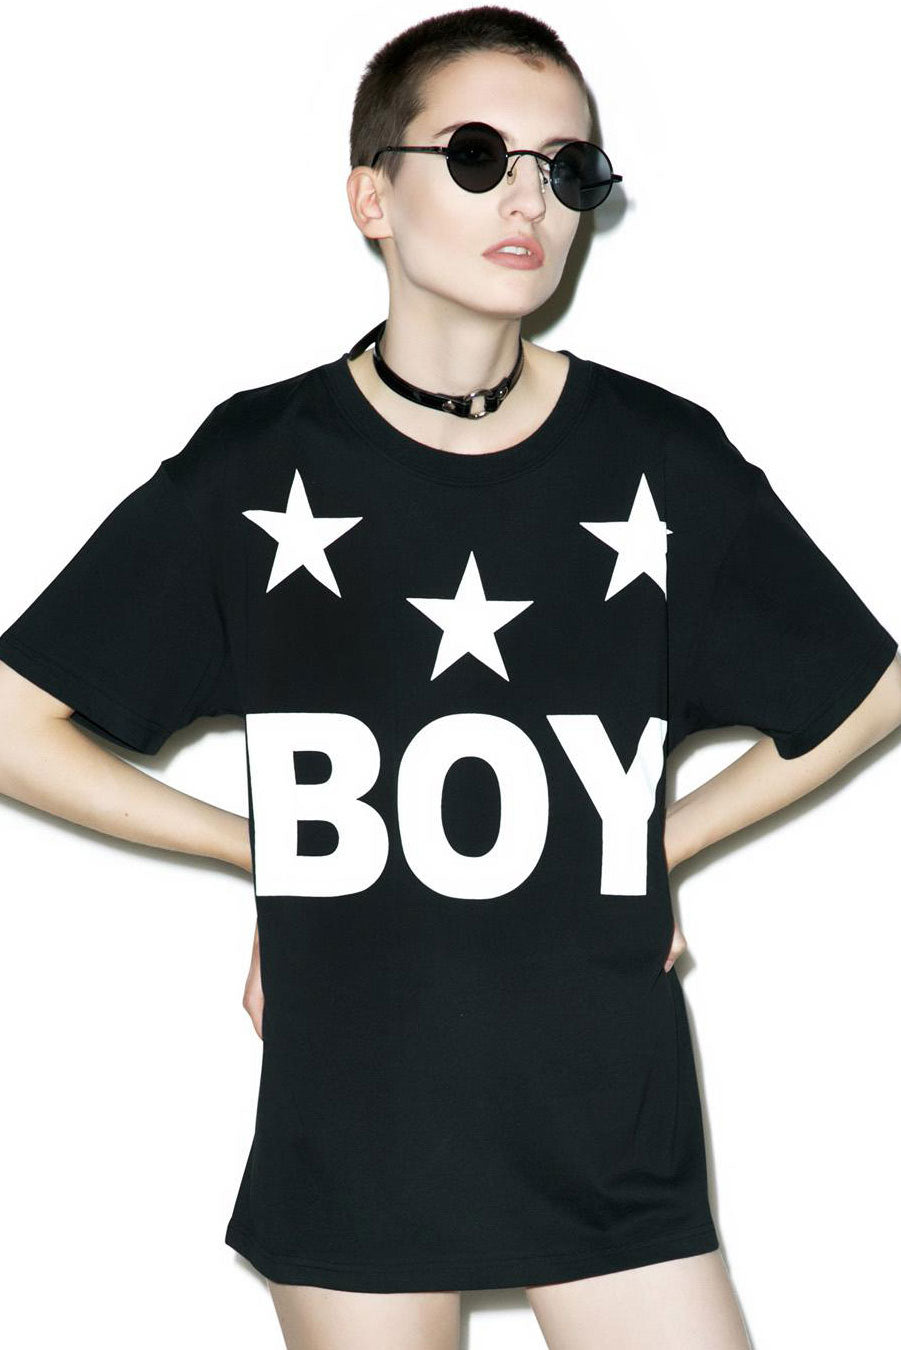 Boy Tri-Star T-shirt (B)